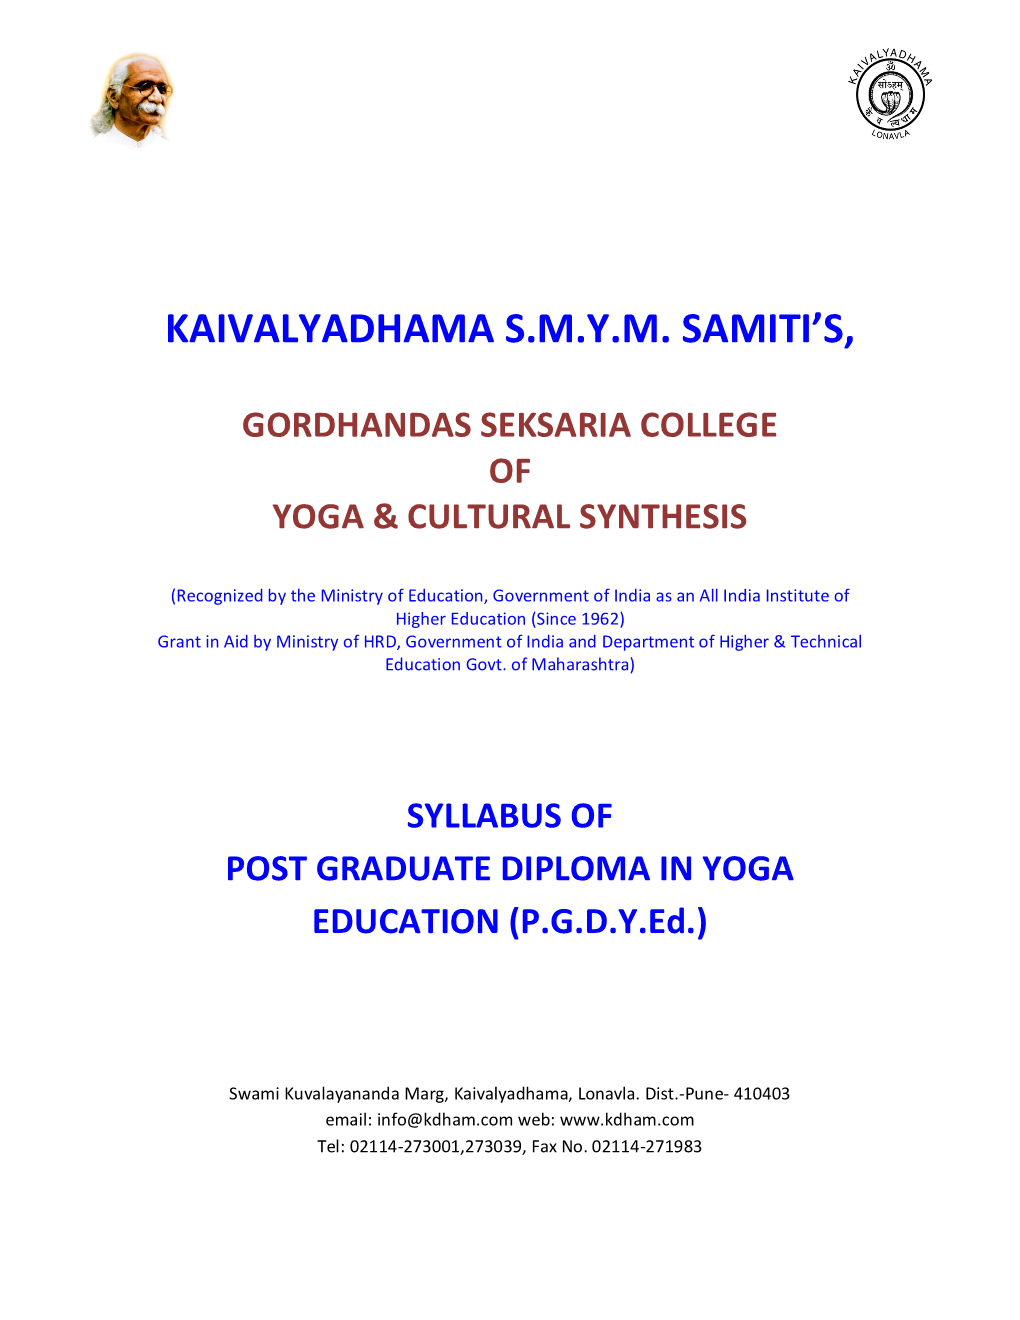 Kaivalyadhama S.M.Y.M. Samiti's